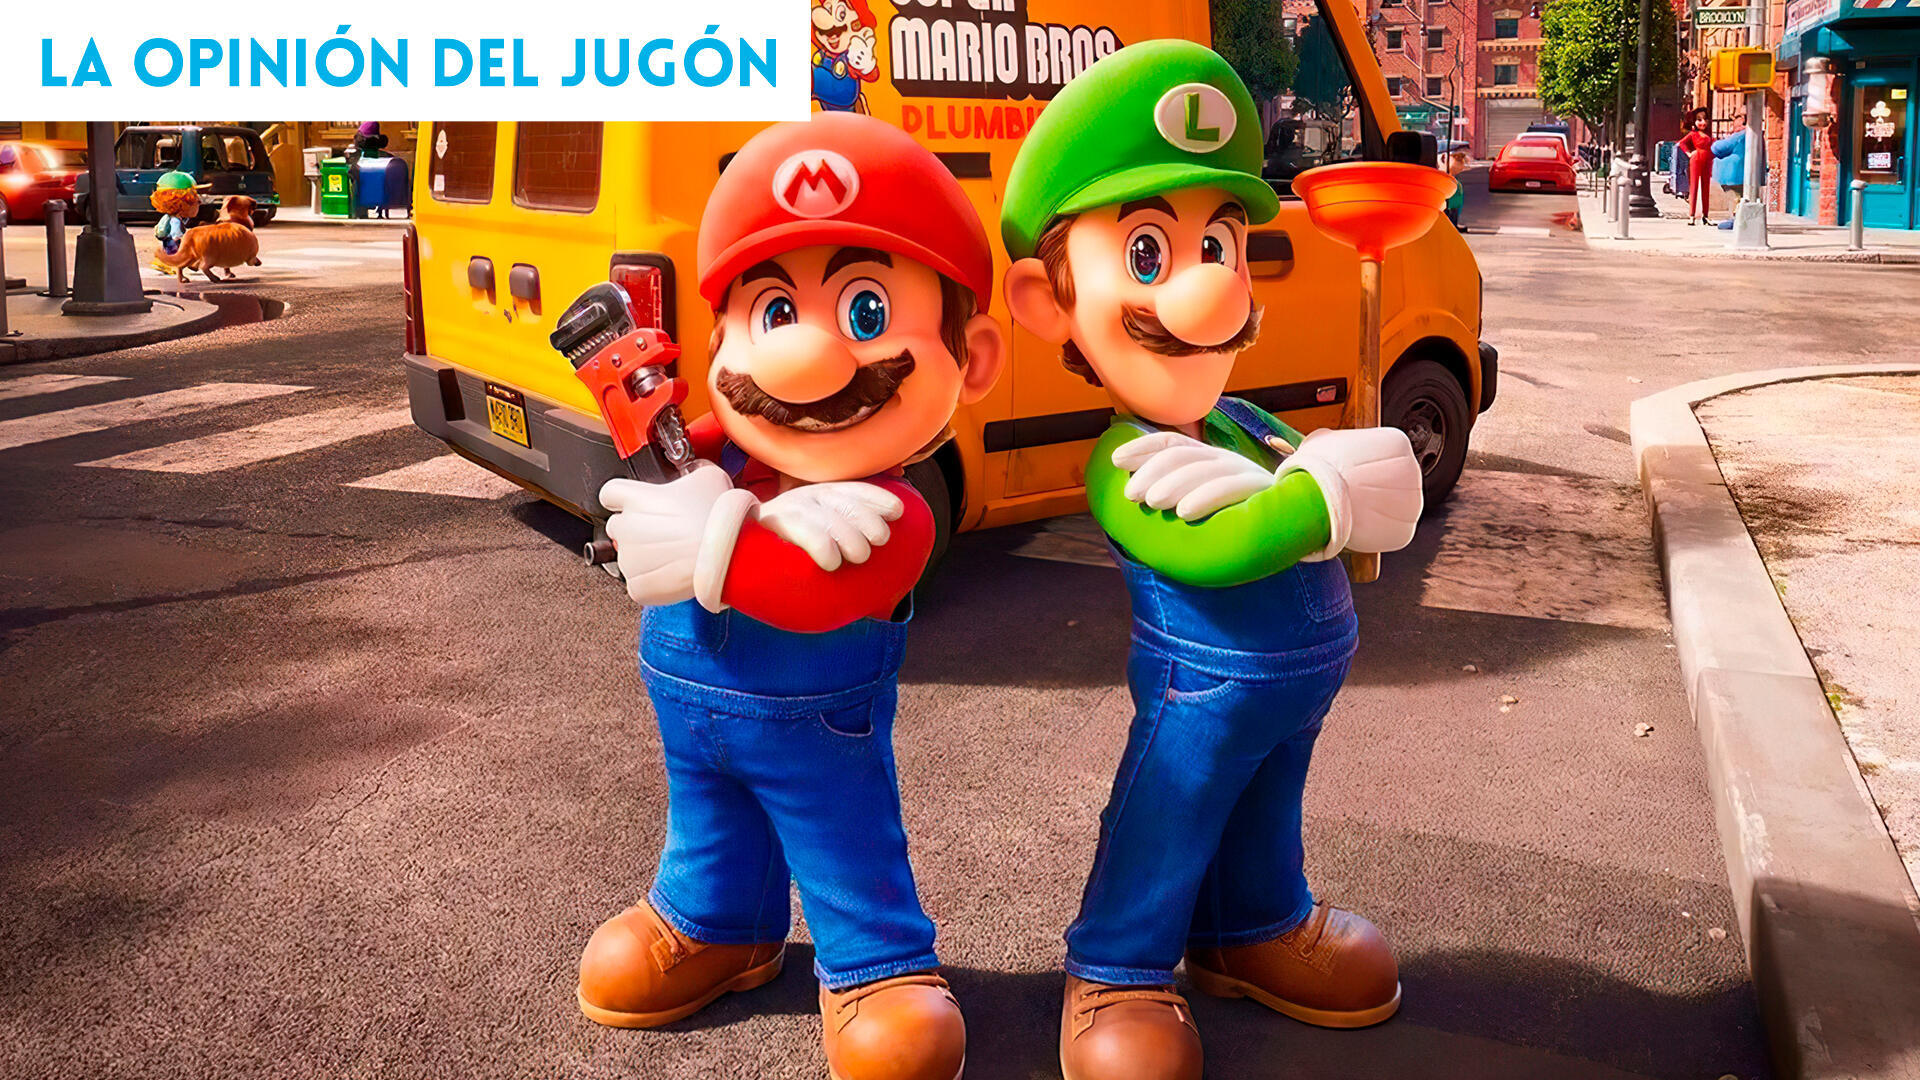 Qu te ha parecido la pelcula de Super Mario Bros.?